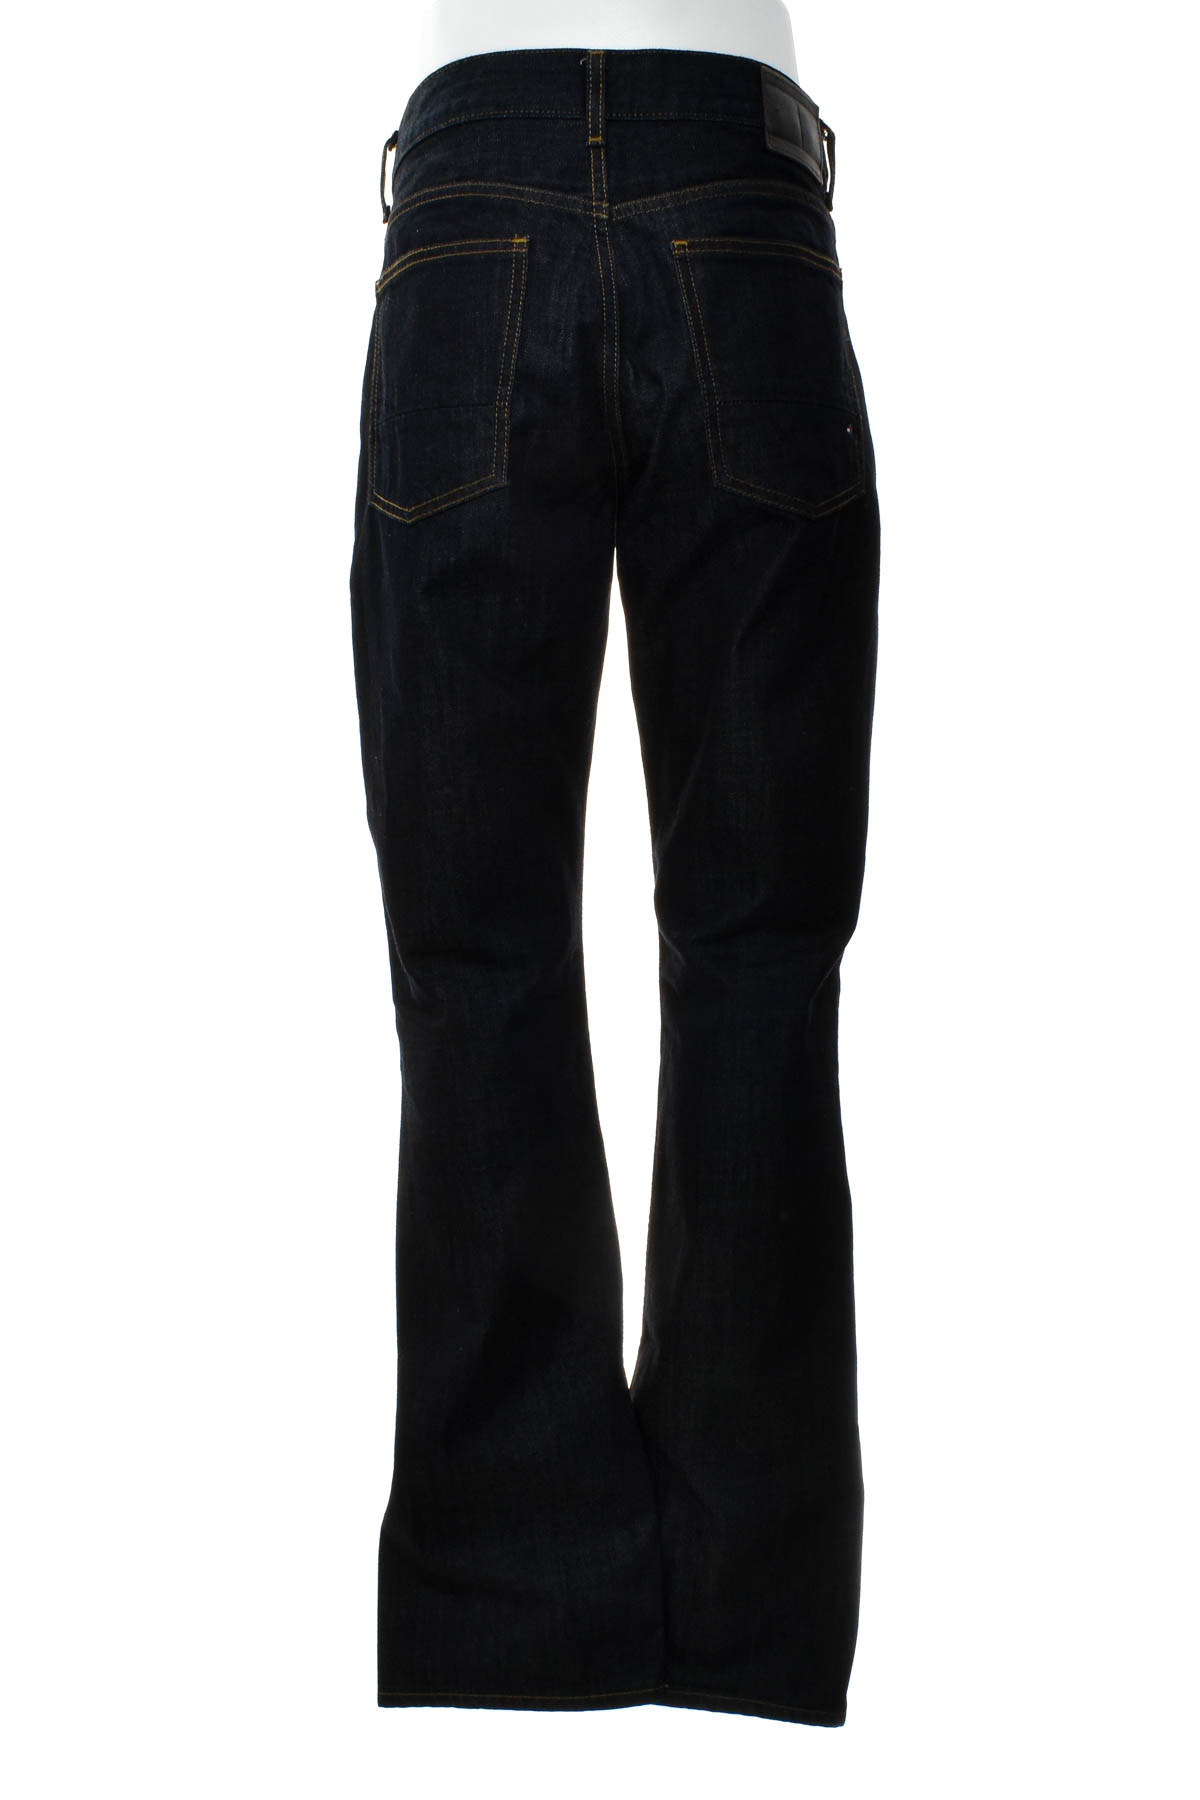 Men's jeans - TOMMY HILFIGER - 0